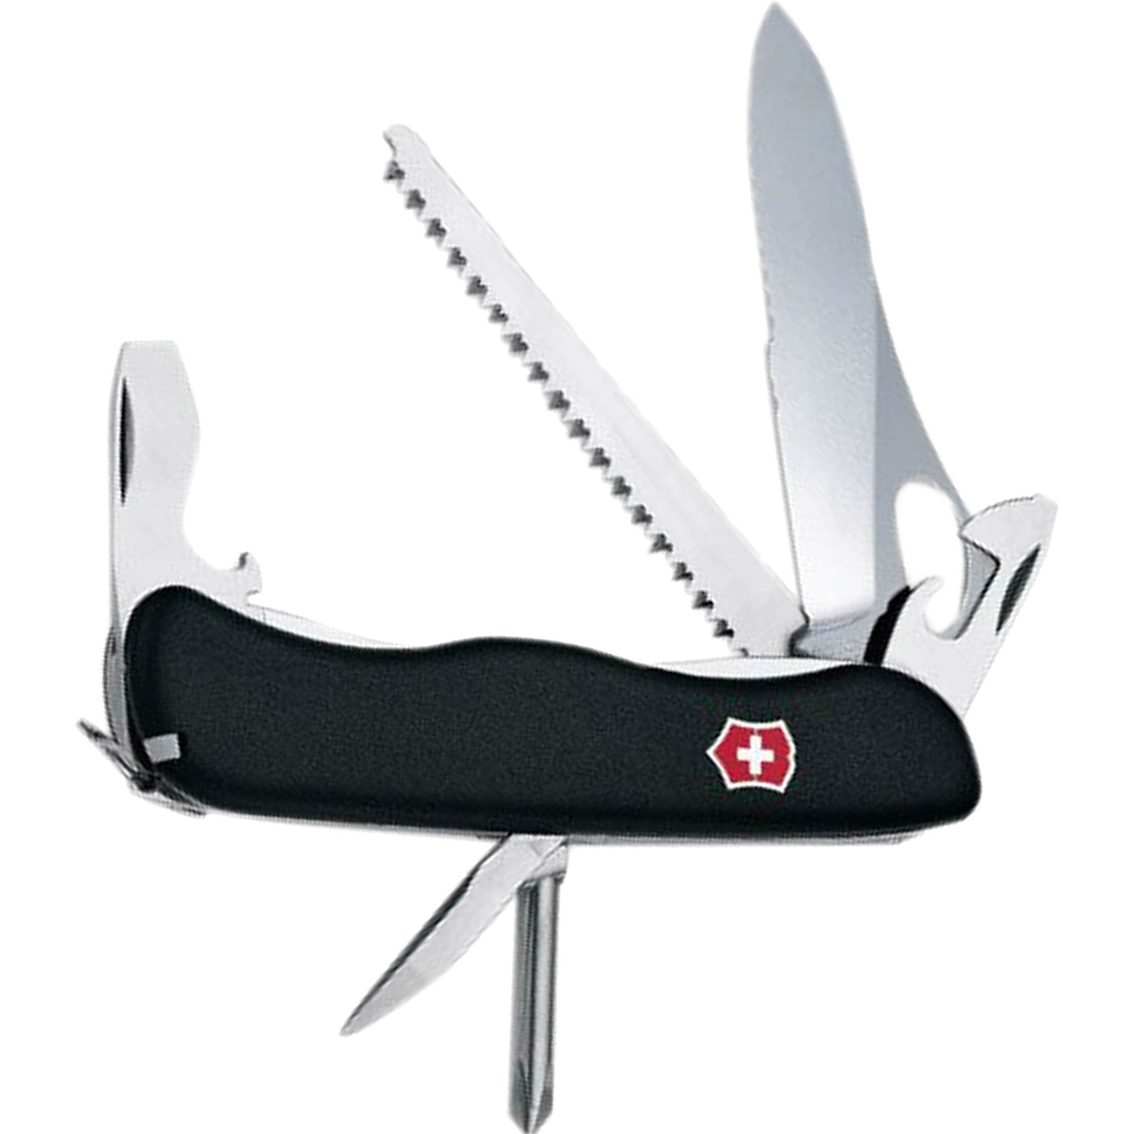 Swiss Army One Hand Trekker Black 12 Function Multipurpose Knife